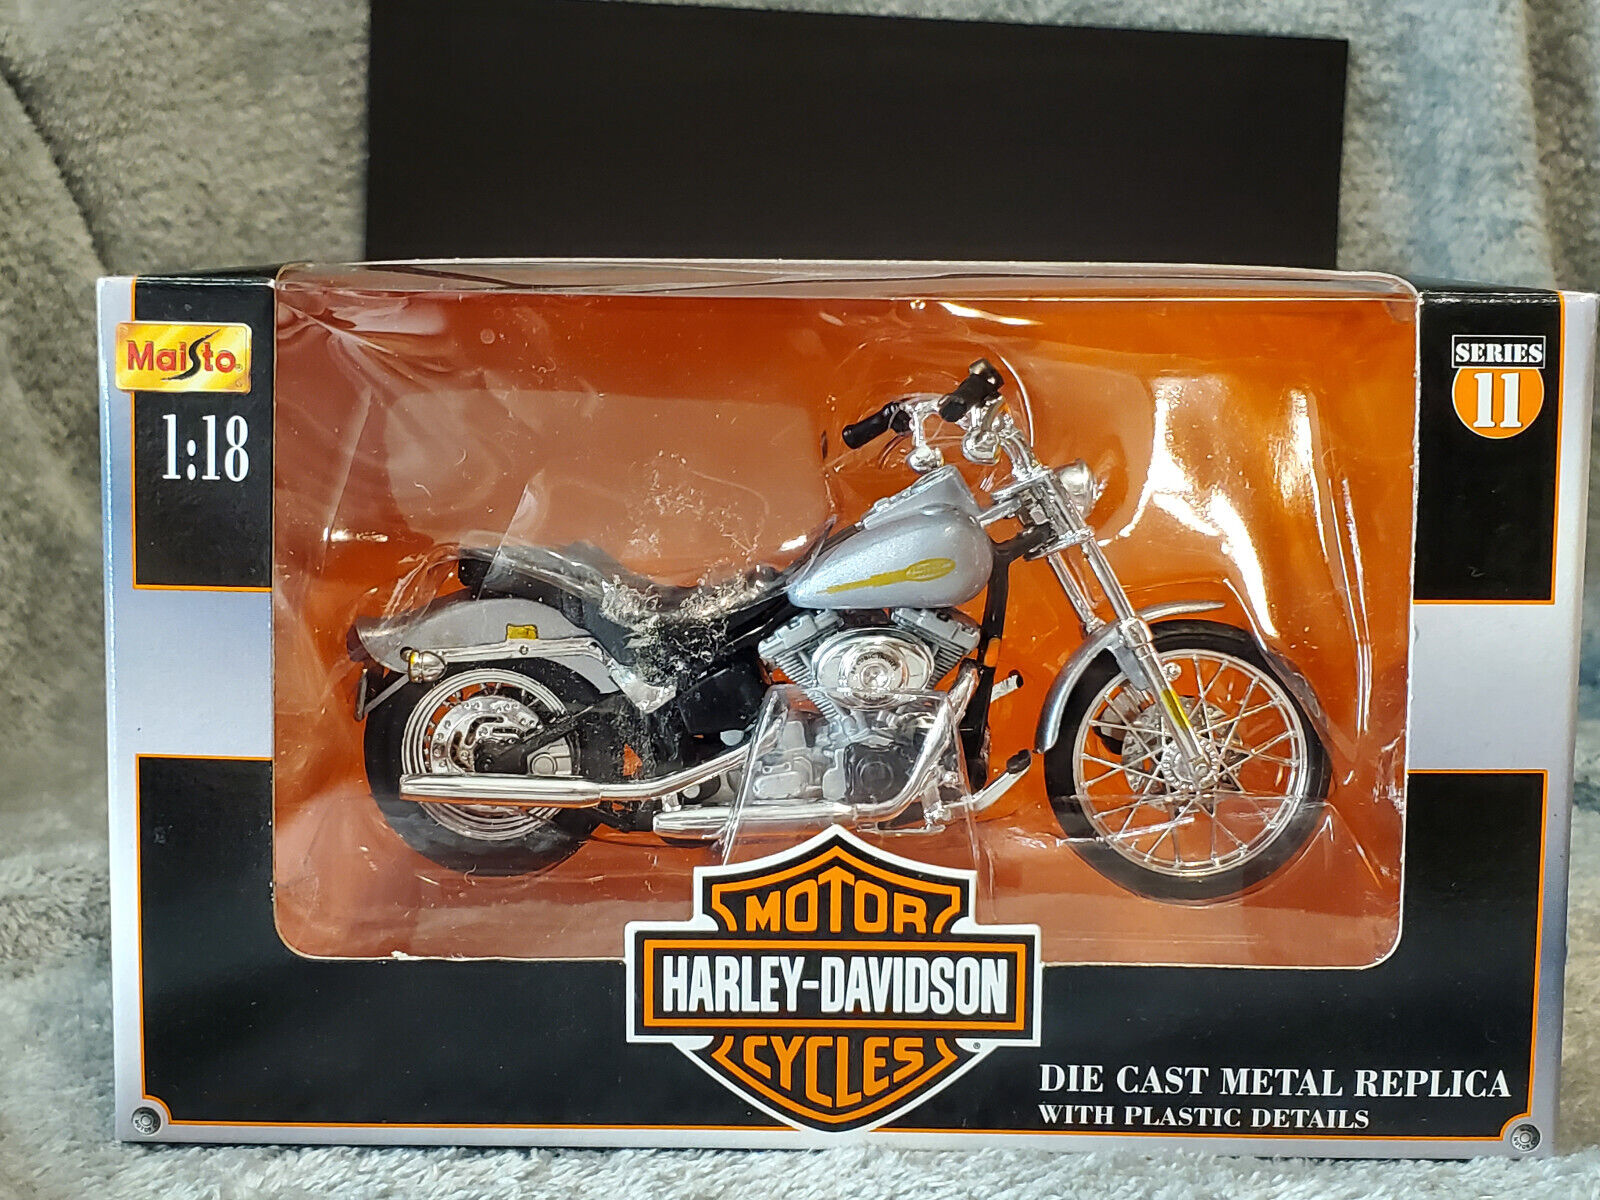 Maisto Series 11 Harley Davidson 1:18 Die Cast 2001 FXST Softail Standard NEW